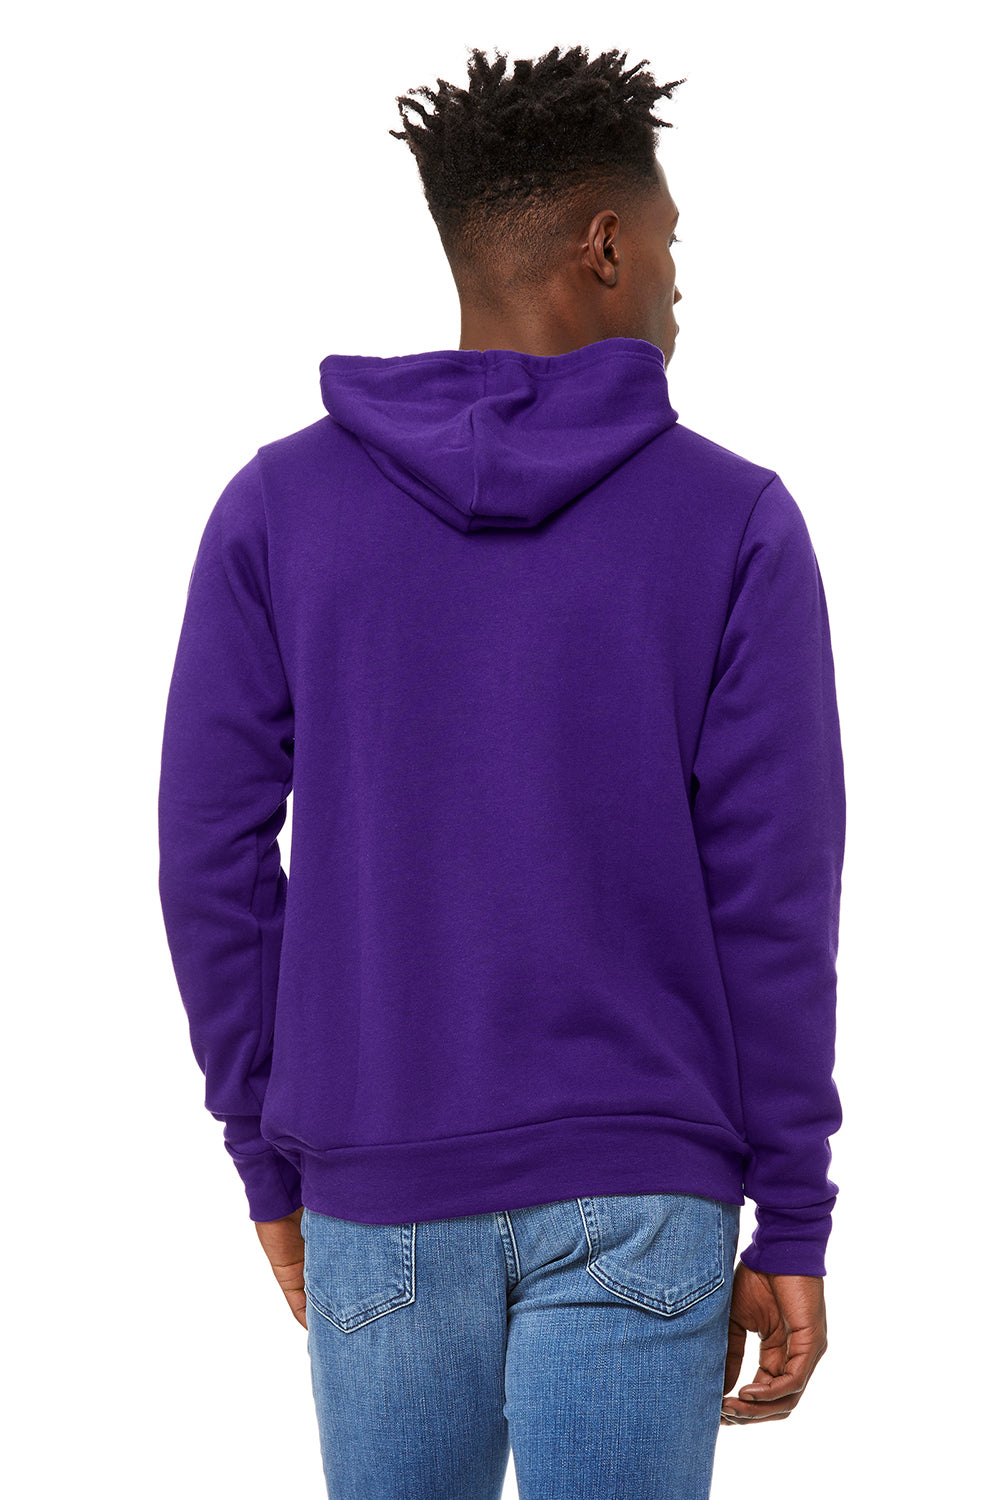 Bella + Canvas BC3719/3719 Mens Sponge Fleece Hooded Sweatshirt Hoodie Team Purple Model Back